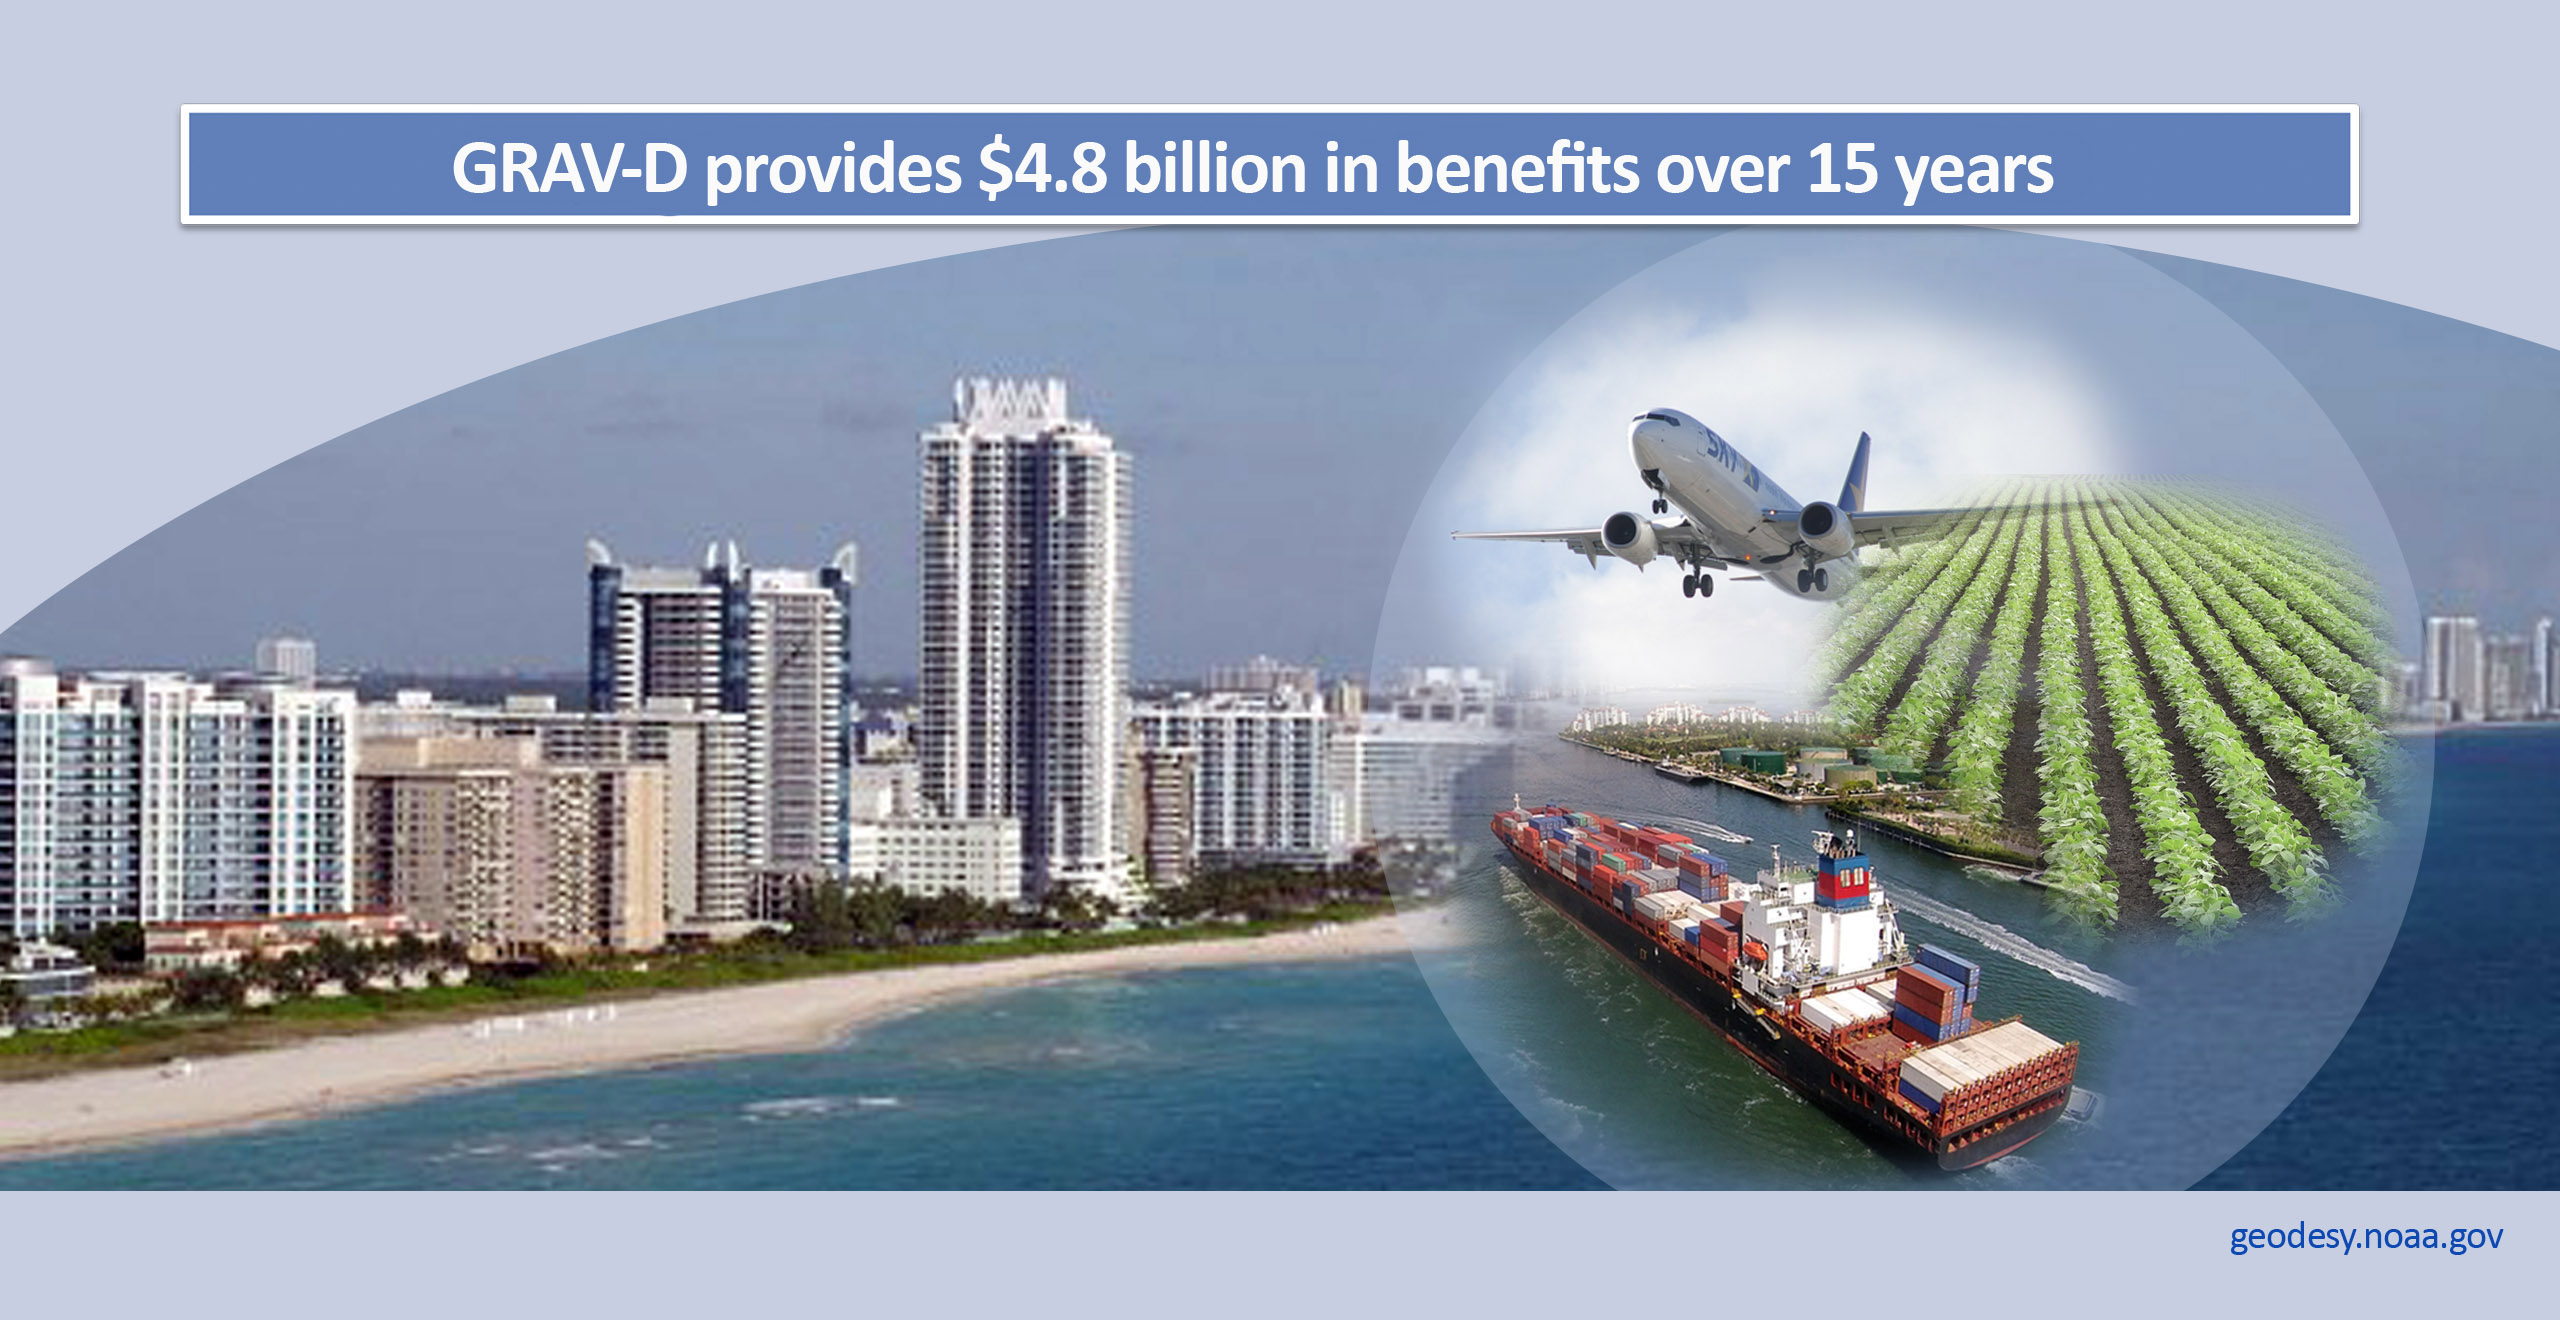 GRAV-D provides $4.8 billion in benefits over 15 years